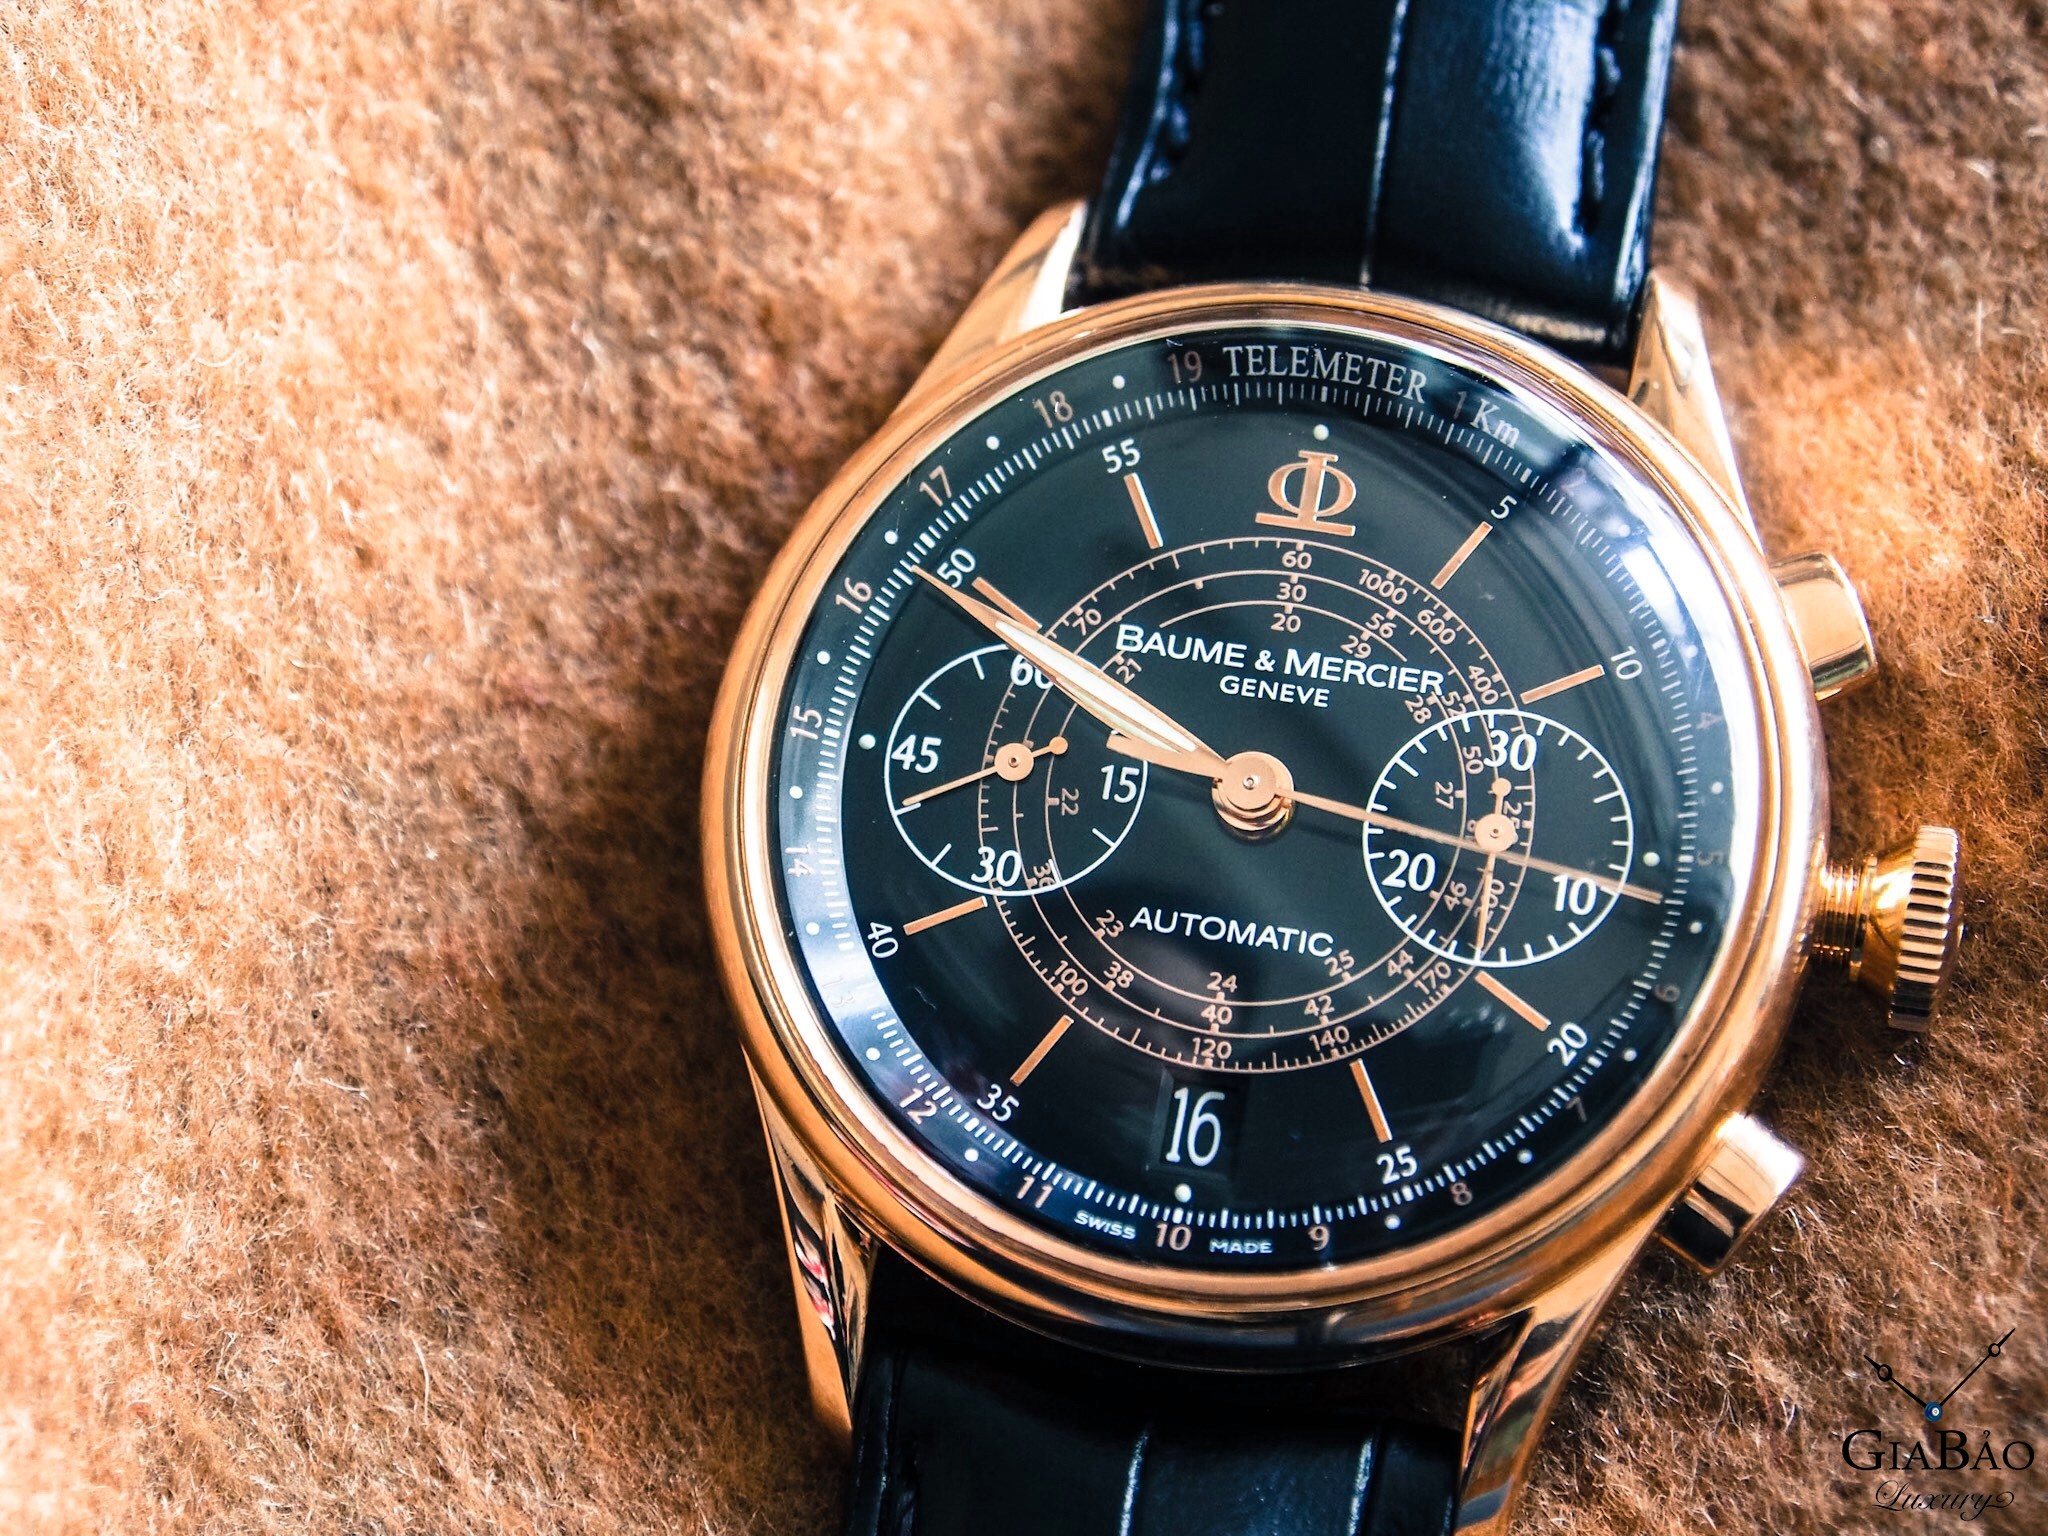 Thu mua đồng hồ Baume & Mercier chính hãng tại Gia Bảo Luxury